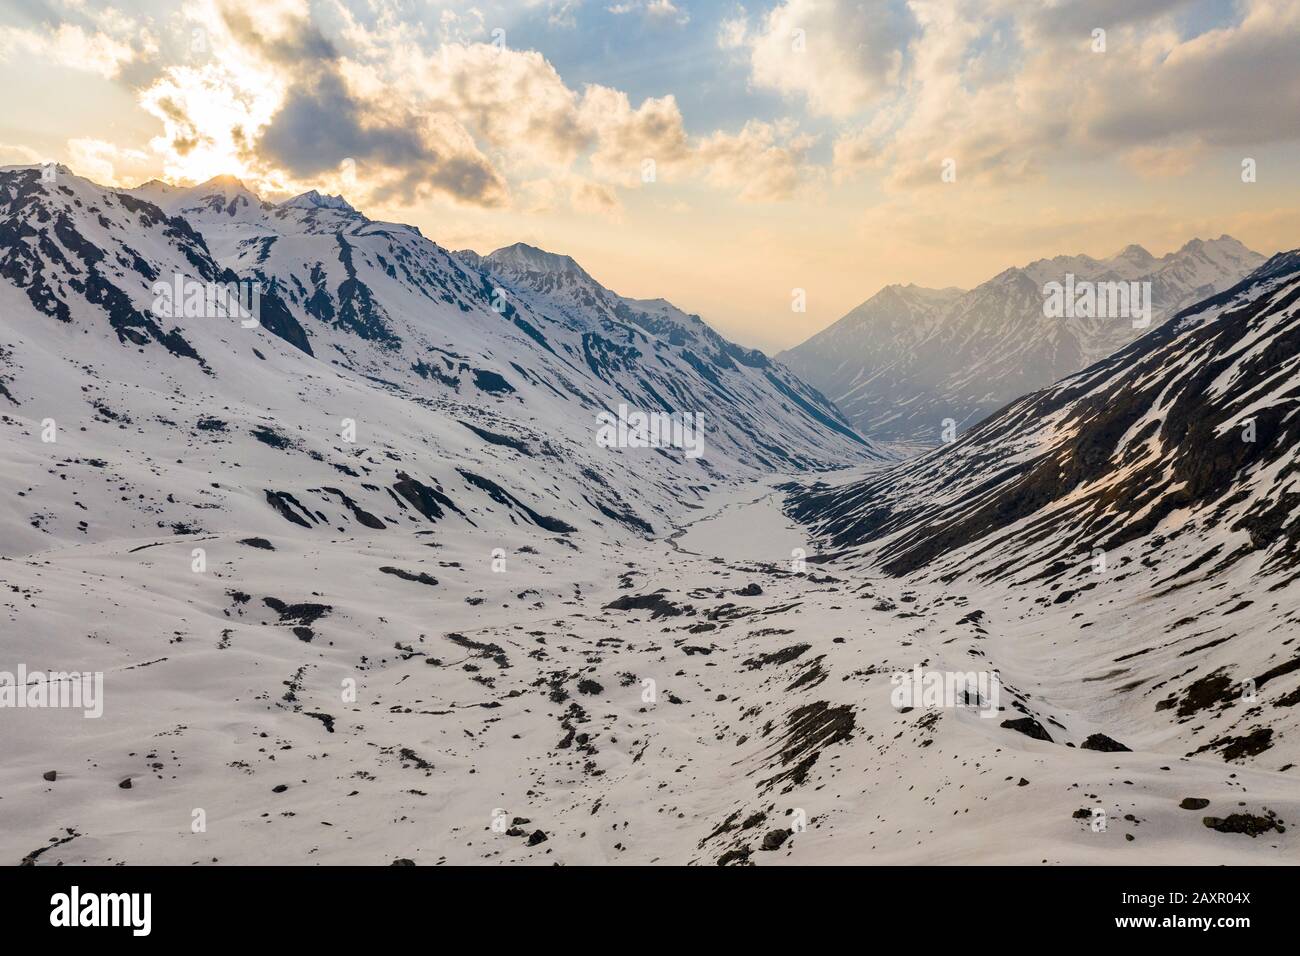 Aline, vallée couverte de neige glaciaire dans les montagnes, Himalaya Népal Banque D'Images